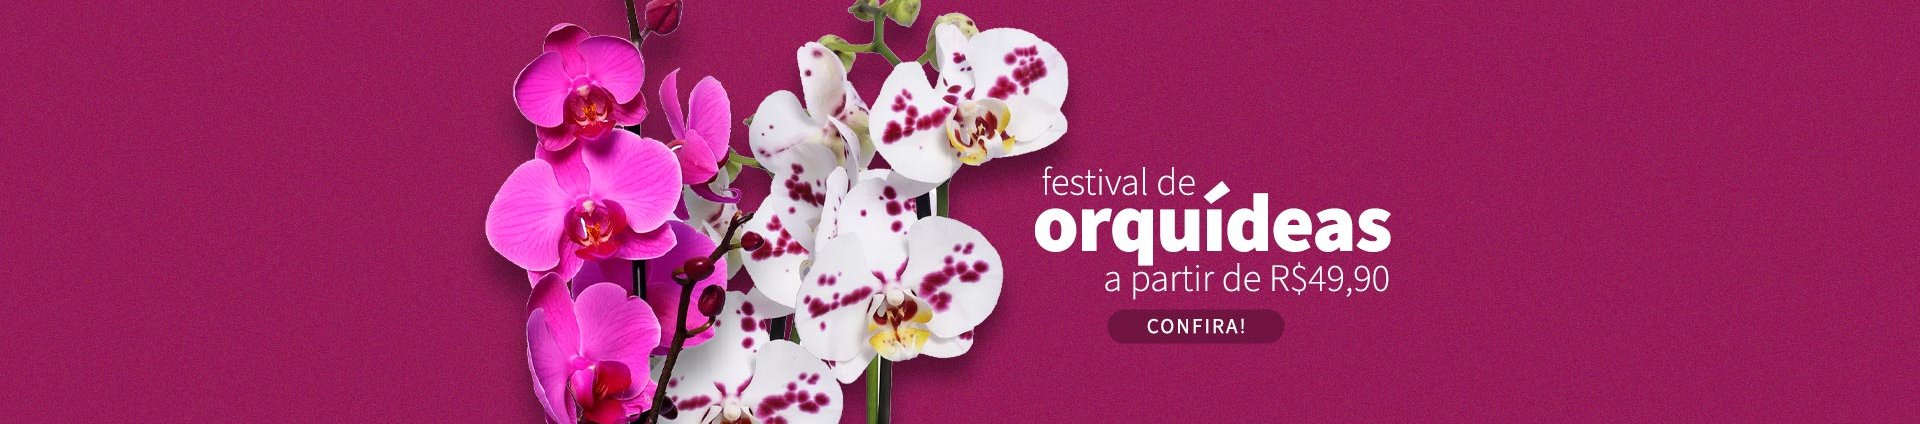 Promoção de Orquídeas - Super